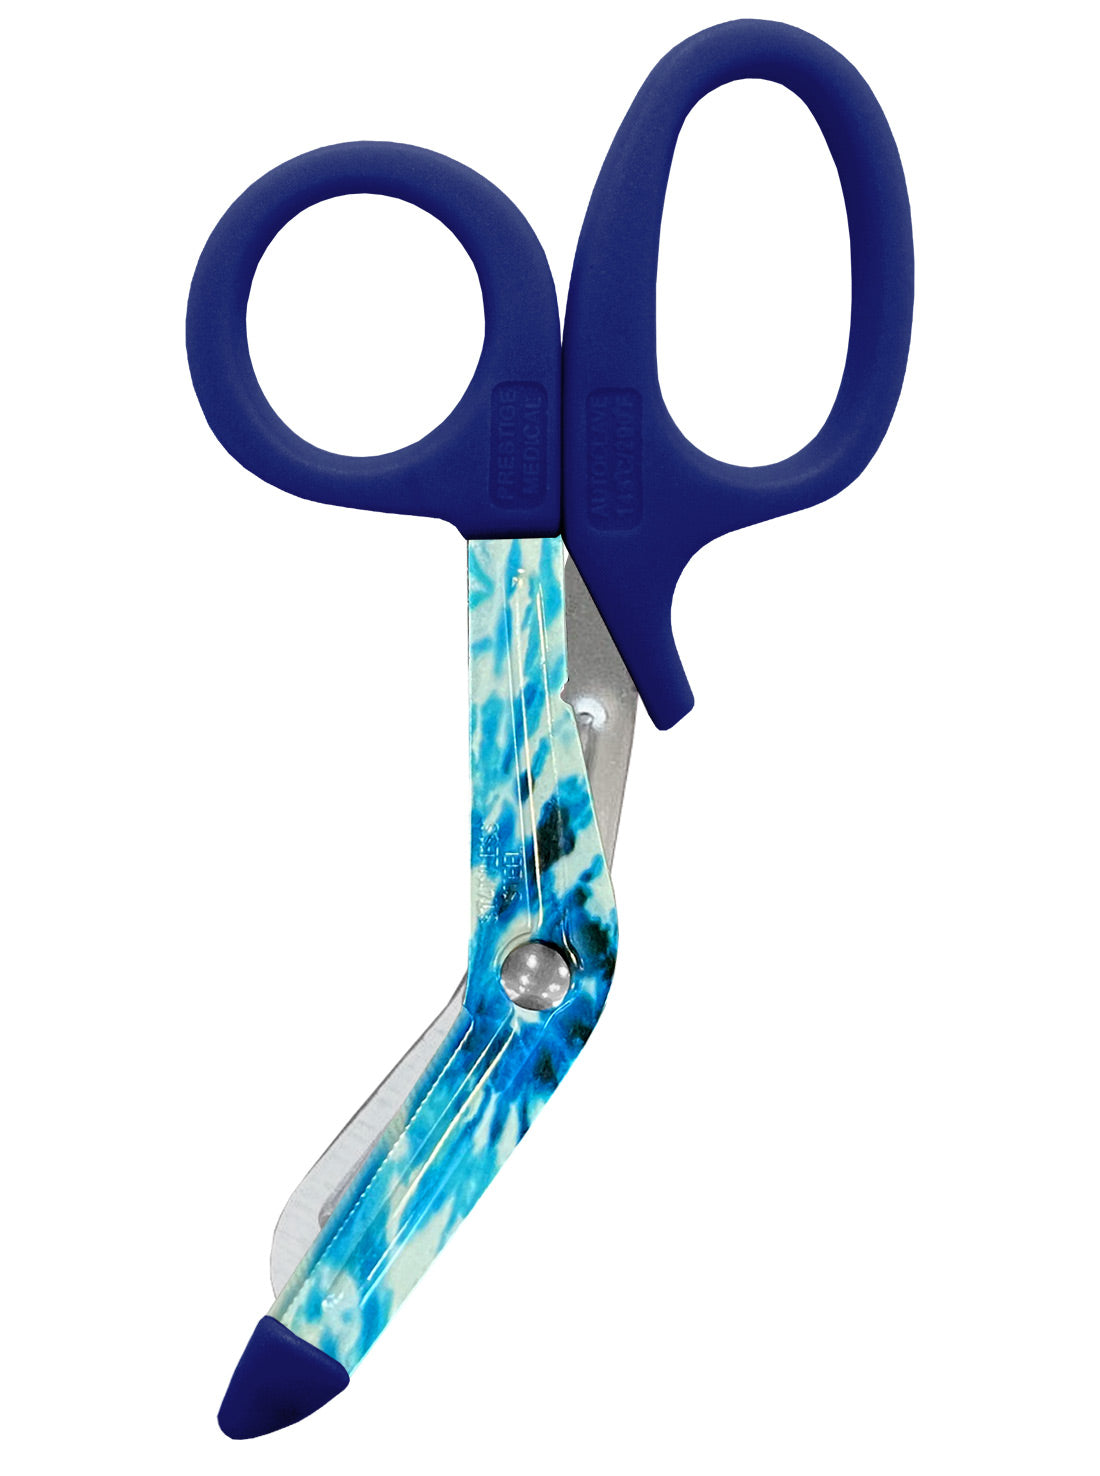 5.5" StyleMate Utility Scissor  by Prestige / Tie Dye Cool Blue